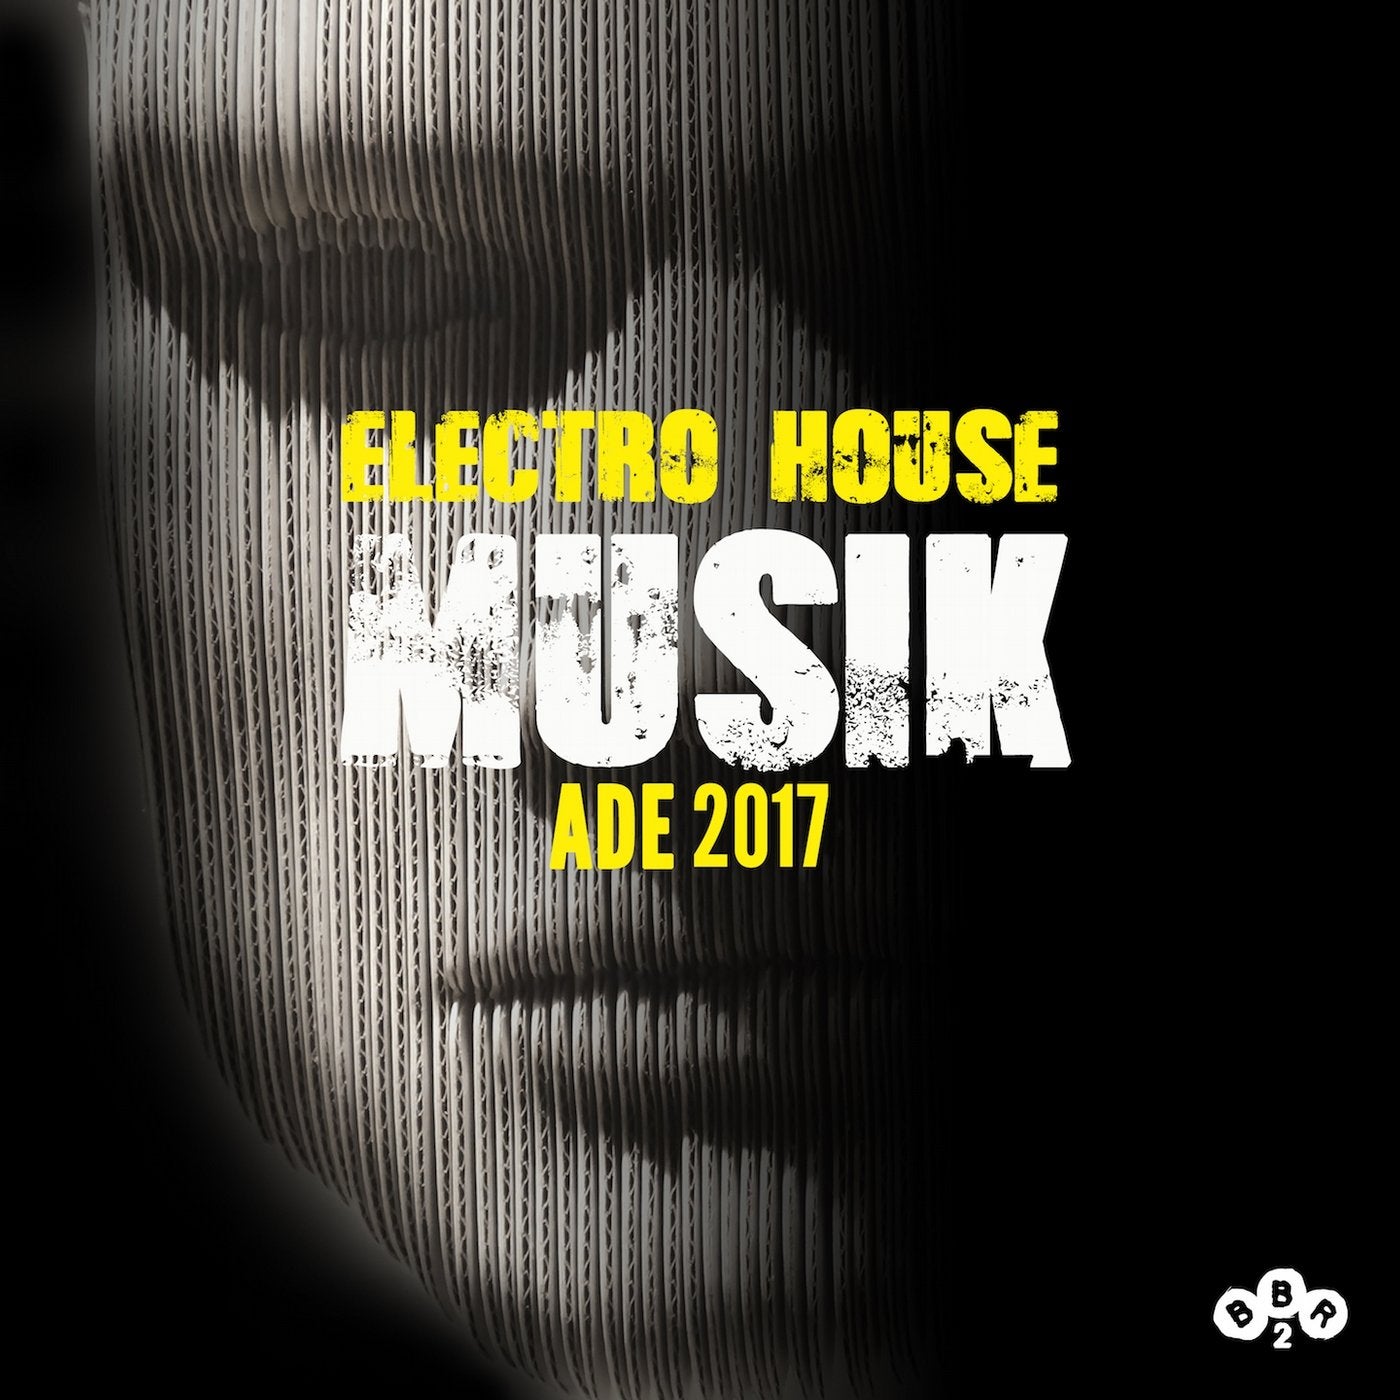 ADE 2017 Electro House Musik